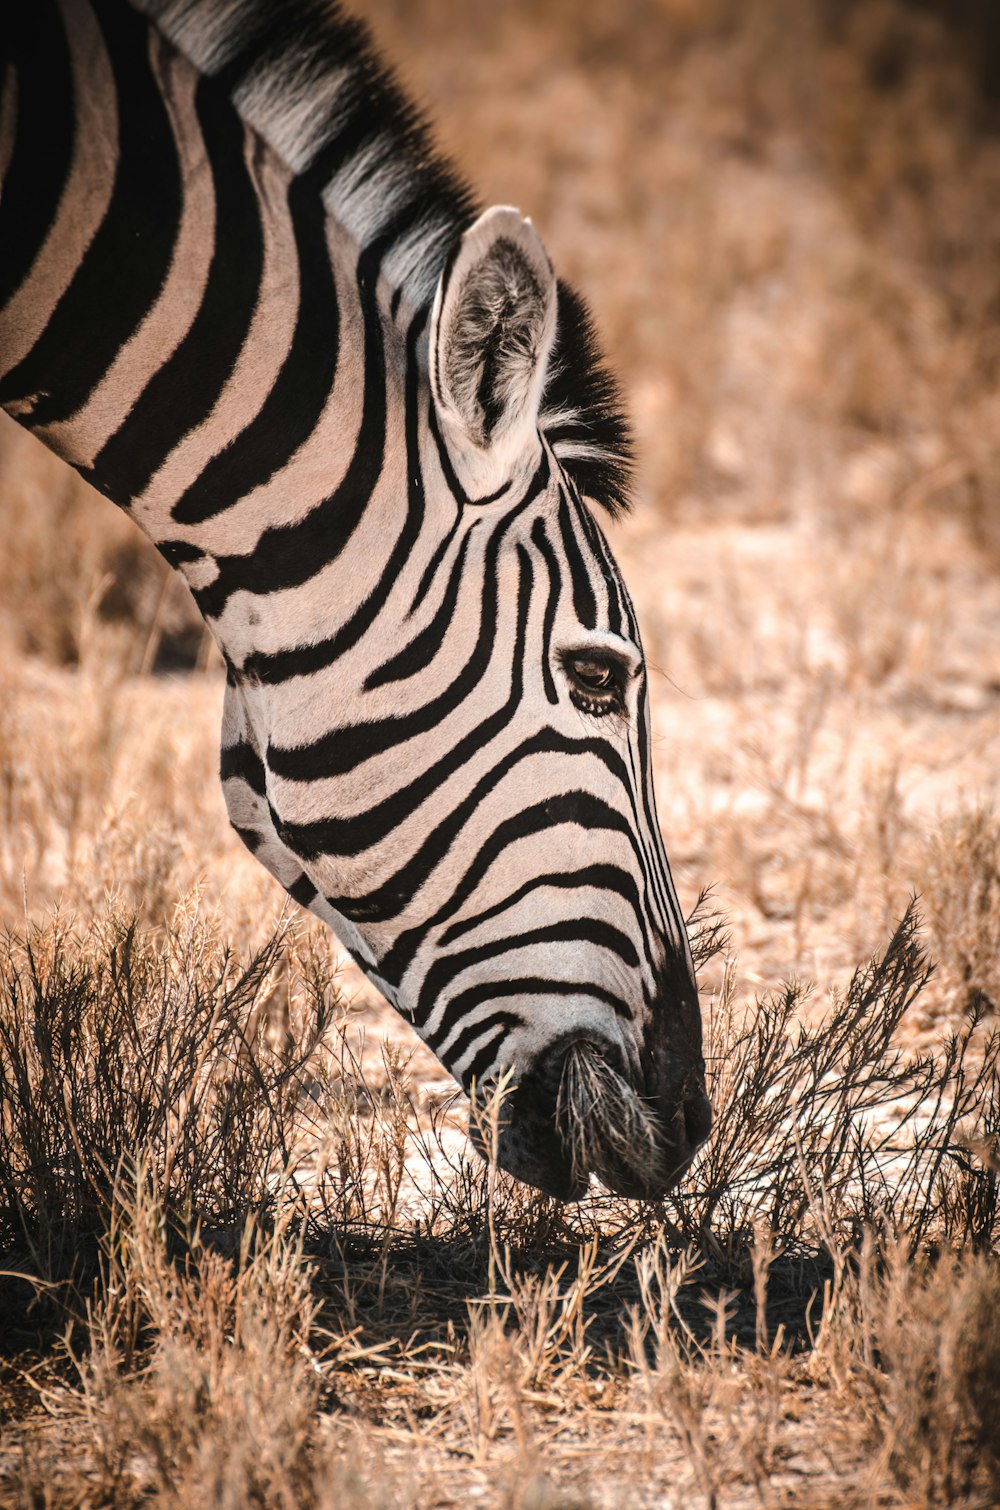 Zebra eating grasses